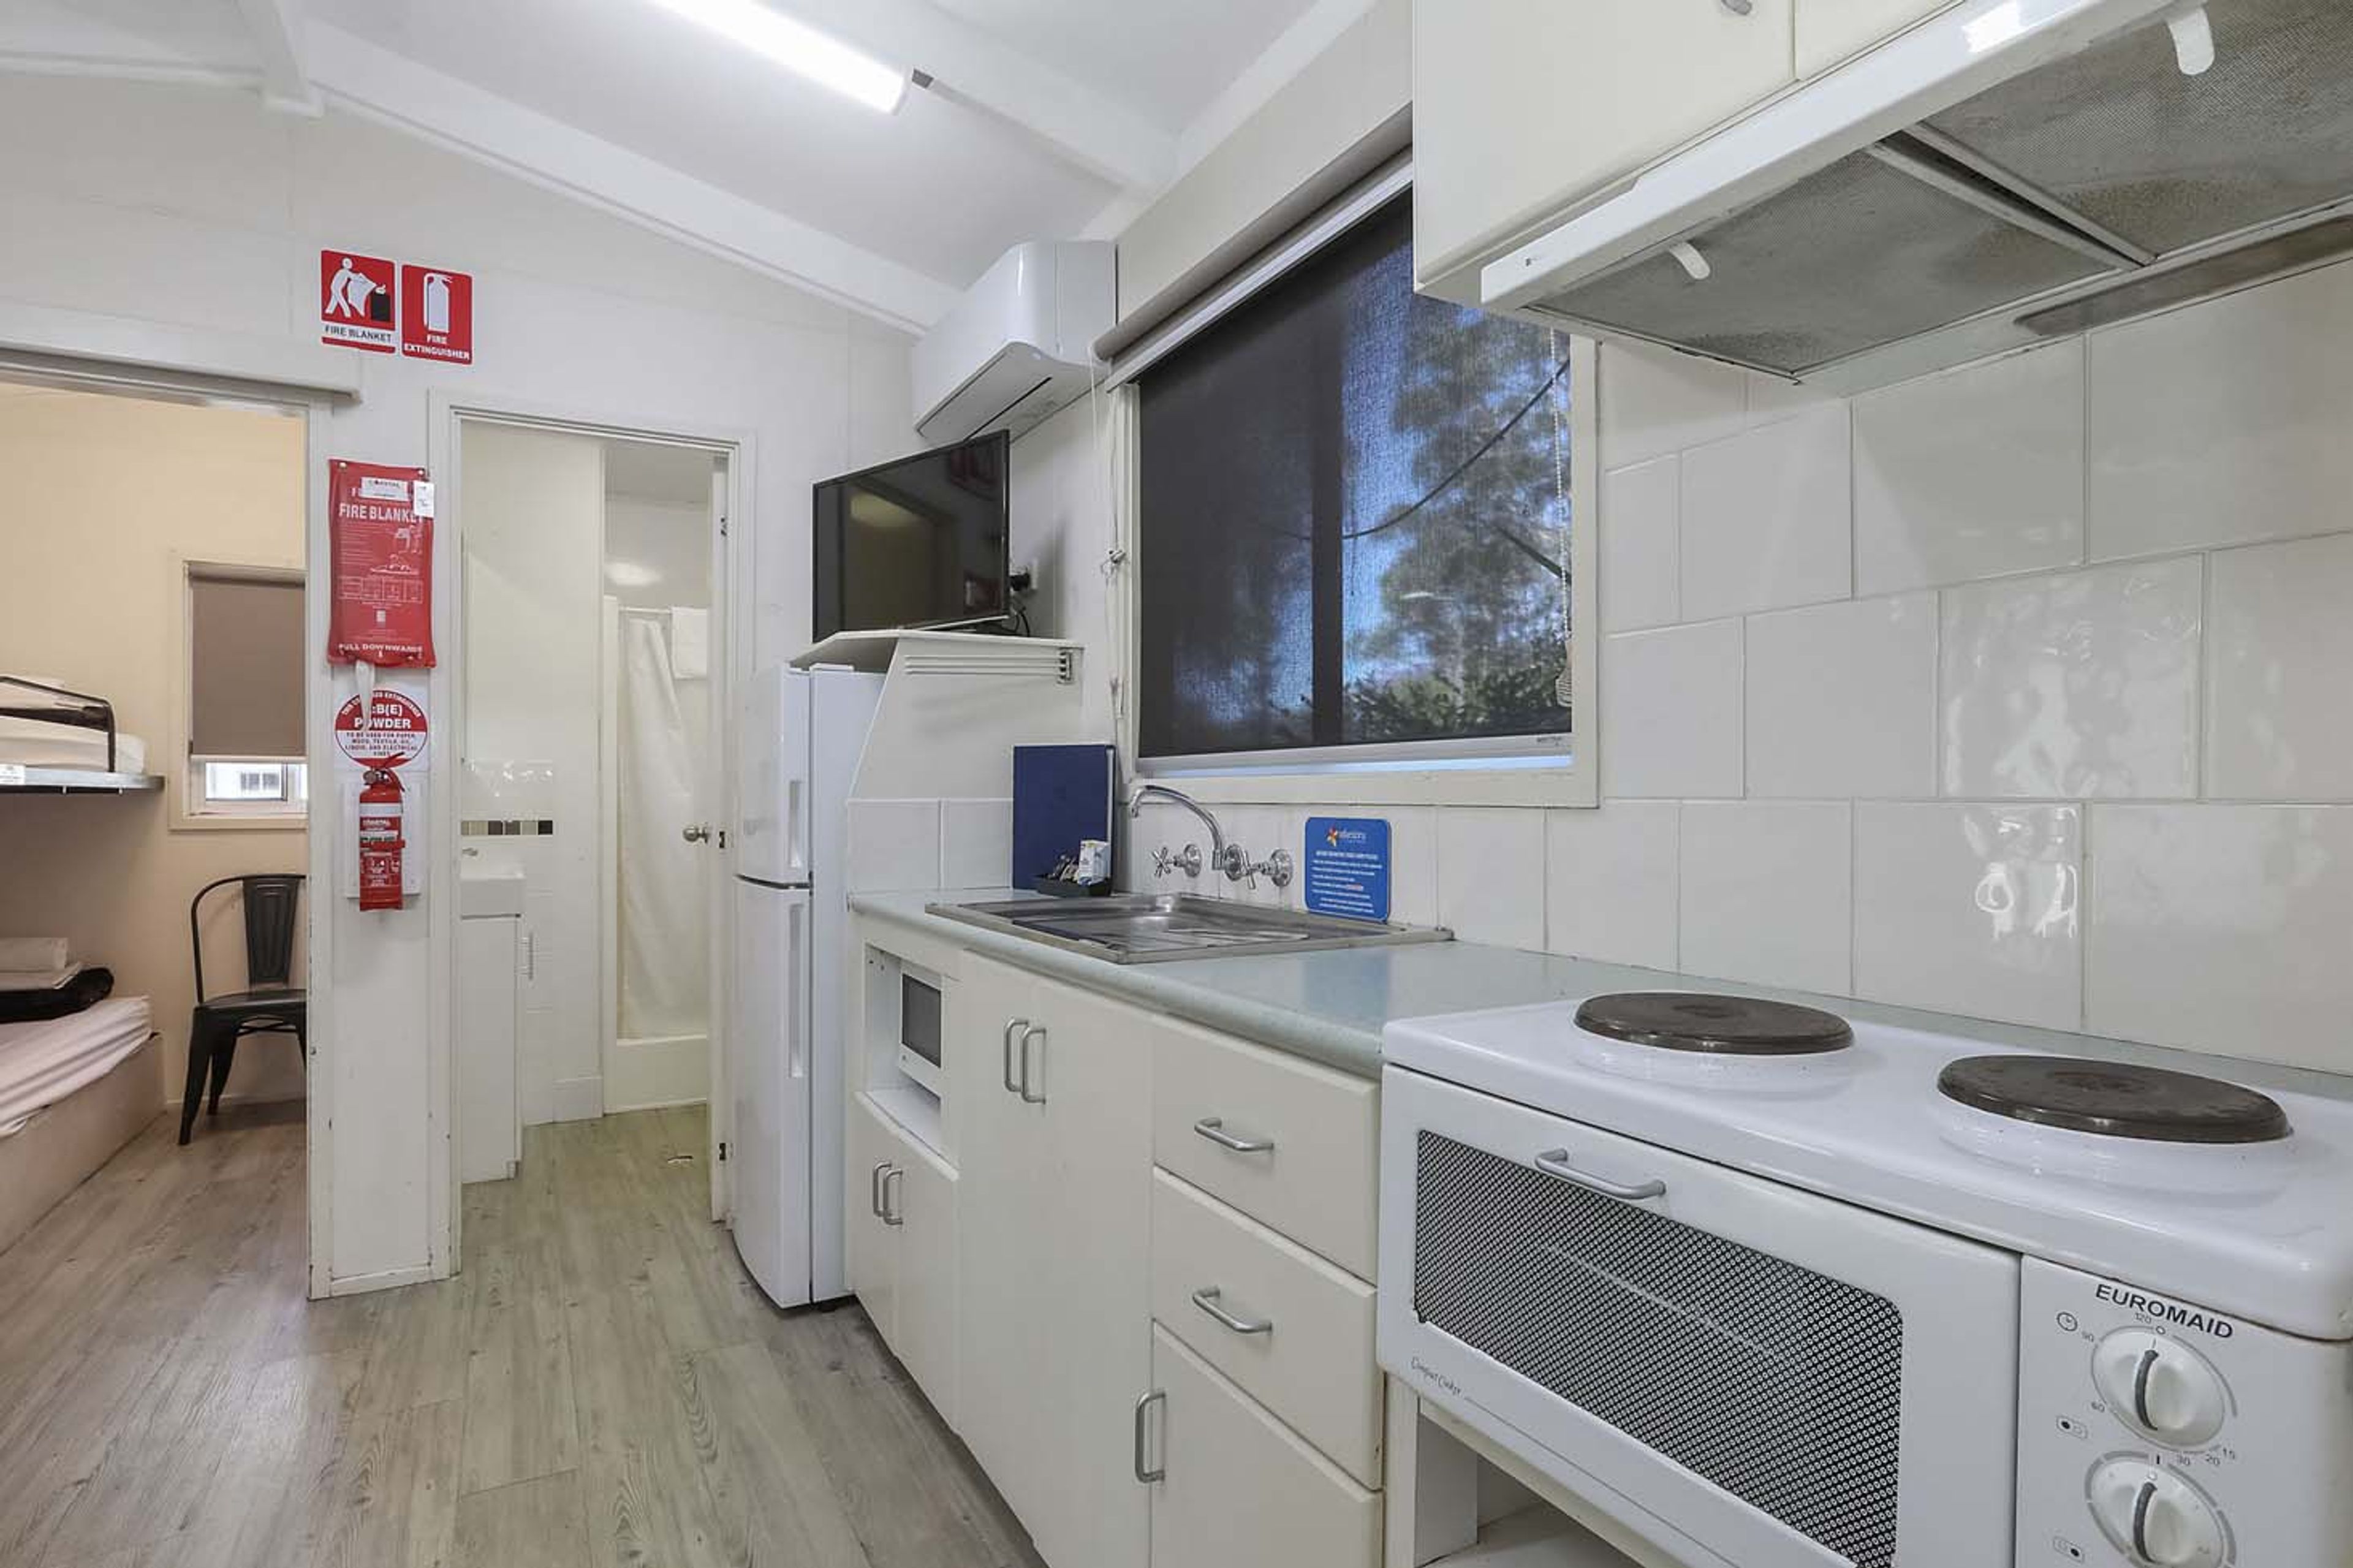 Coffs Harbour - Standard cabin sleeps 4 - kitchen